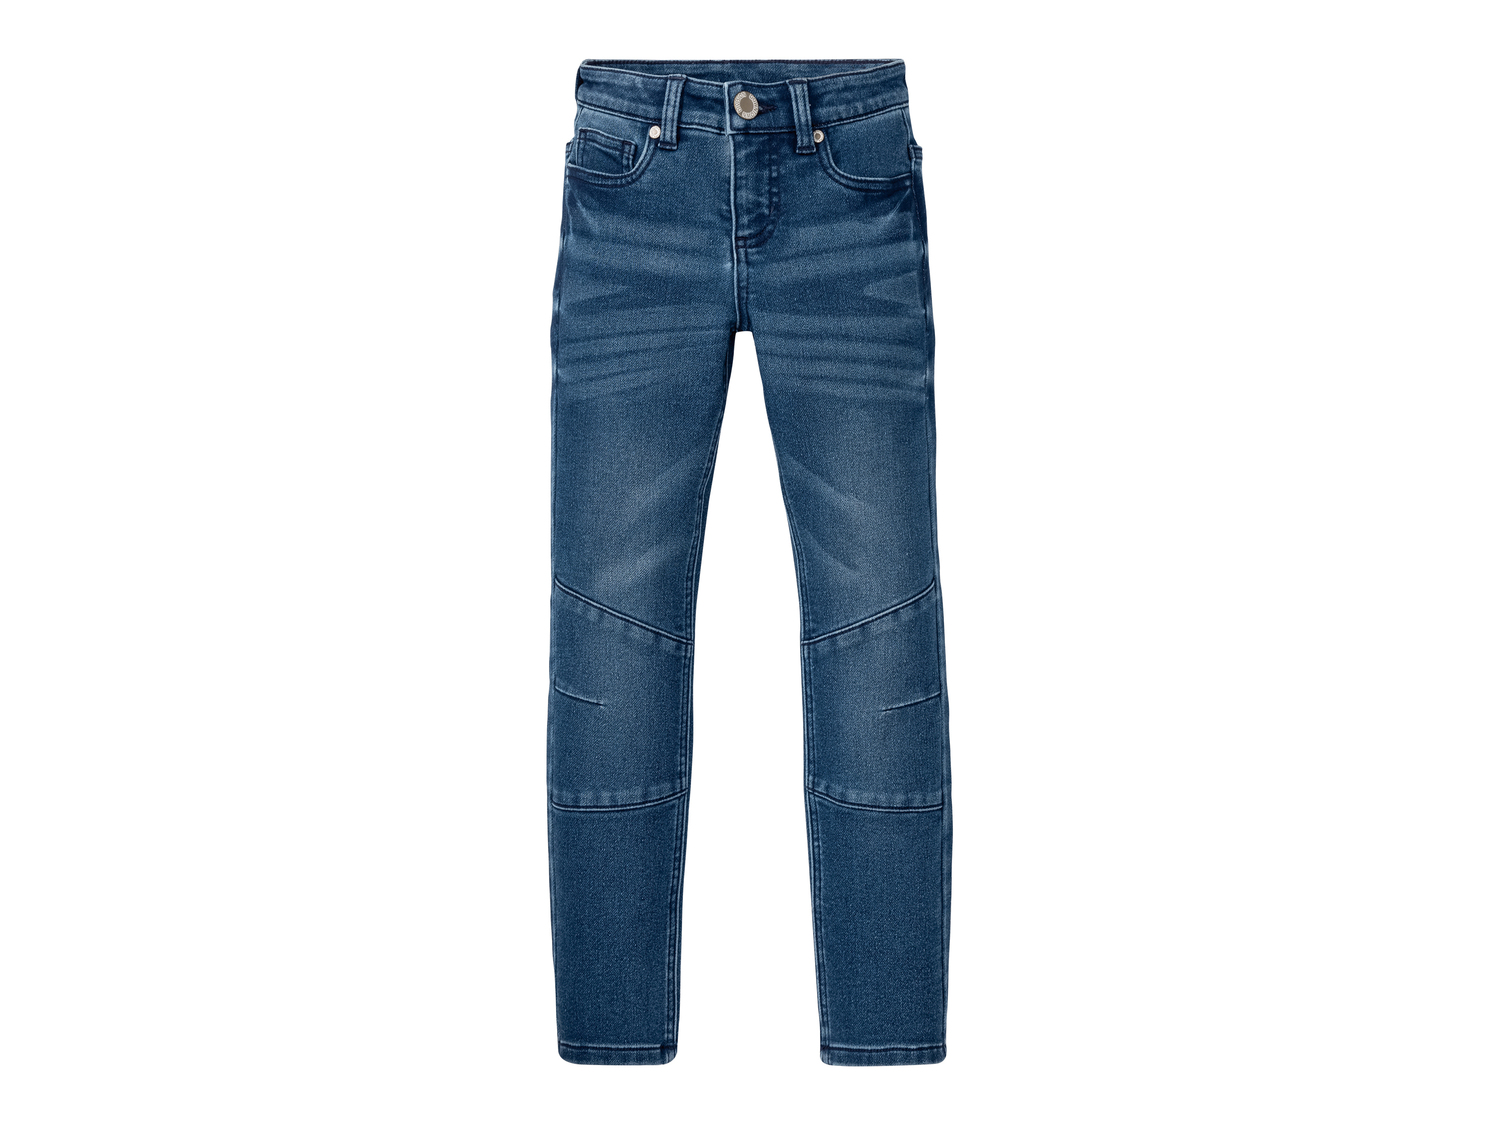 Jeans da bambino Pepperts, prezzo 8.99 &#8364; 
Misure: 6-14 anni
Taglie disponibili

Caratteristiche

- ...